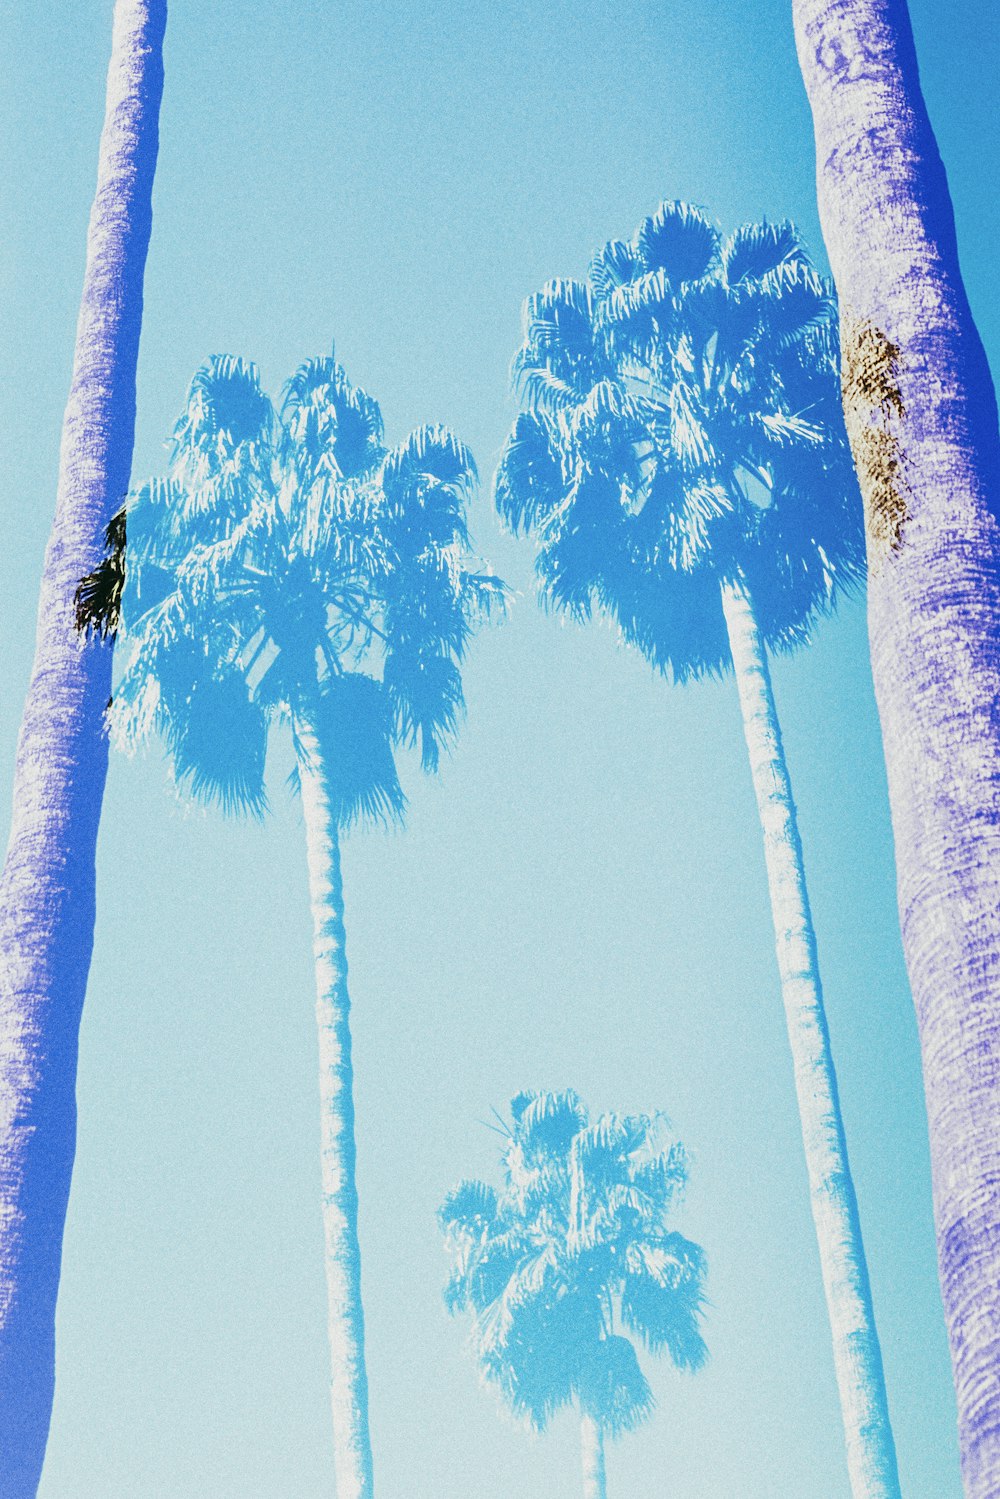 Photographie en contre-plongée de palmiers verts sous un ciel bleu pendant la journée